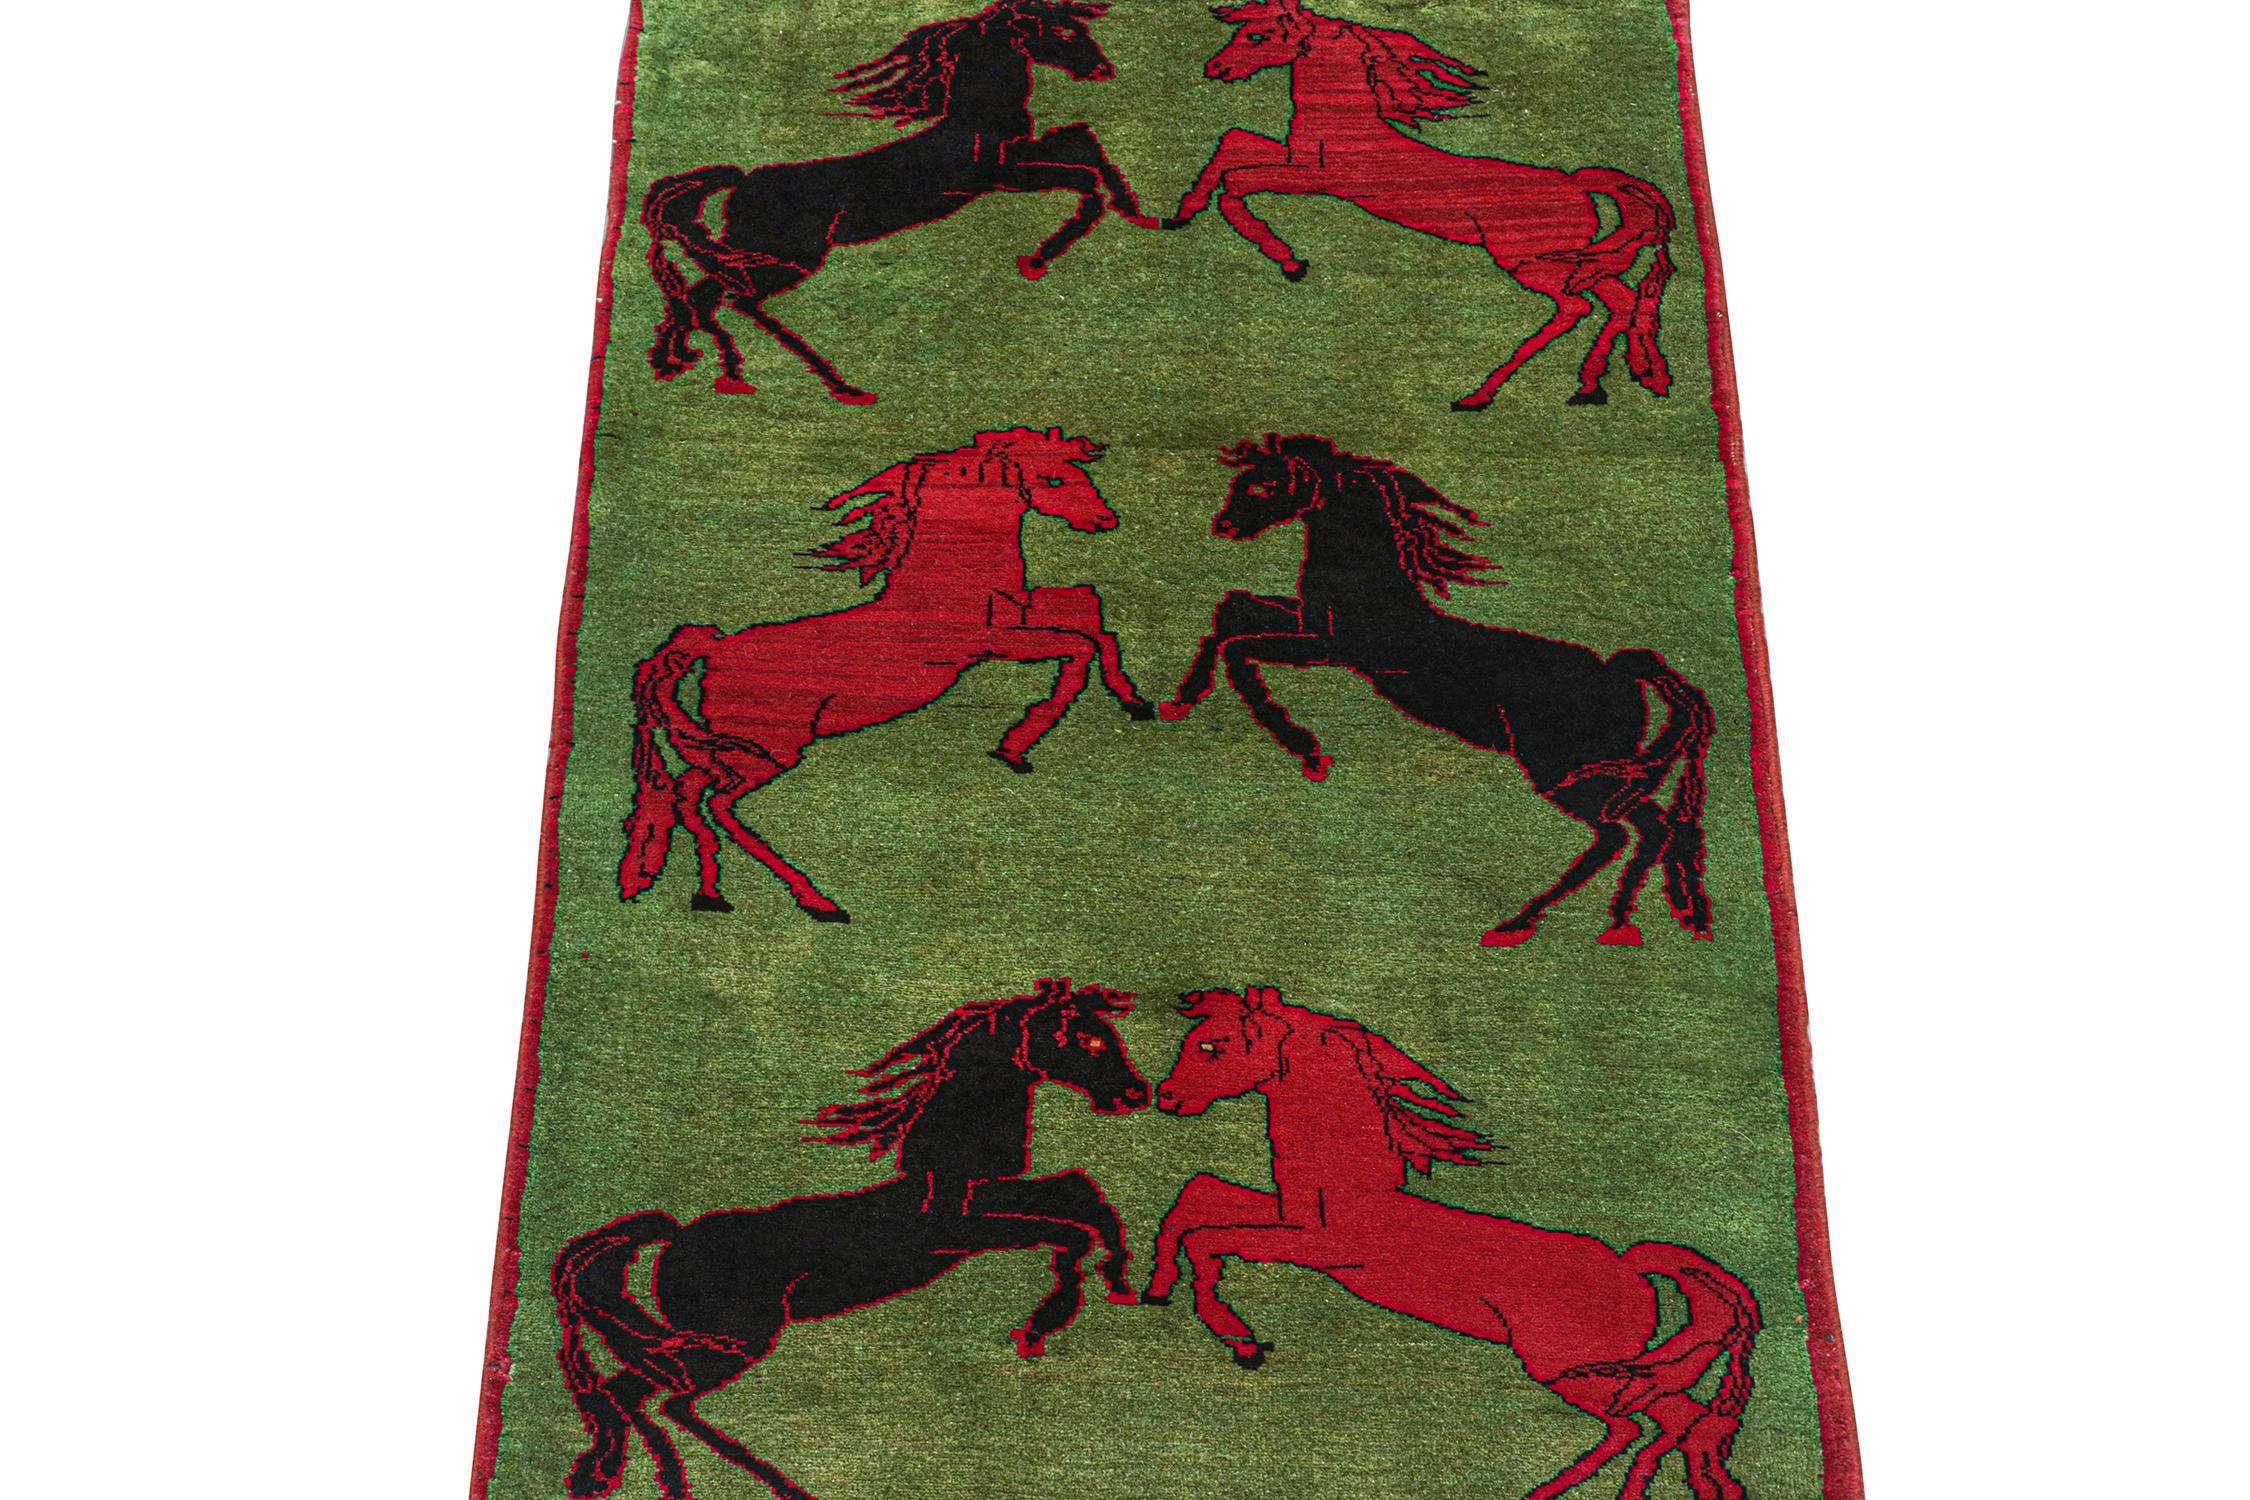 Dieser alte 3x5 Perserteppich ist ein seltenes Stammesstück, handgeknüpft aus Wolle um 1950-1960.

Über das Design: 

Das Design besteht aus einem grünen Feld mit sechs Bildmustern, die Pferde in schwarzen und roten Farbtönen darstellen. Kenner